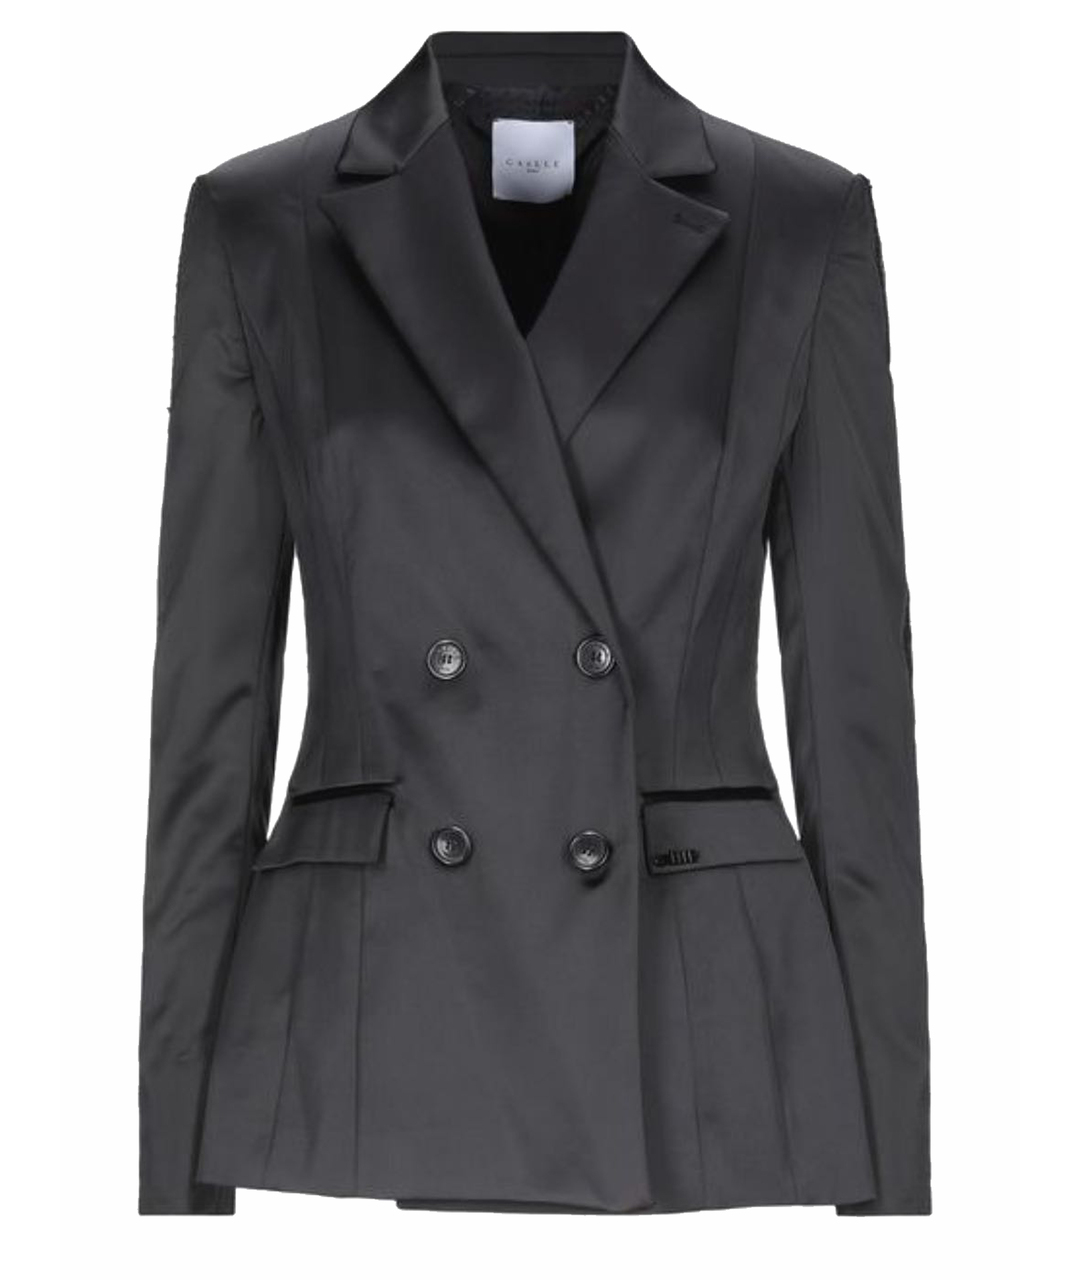 GAELLE BONHEUR Черный атласный жакет/пиджак, фото 1